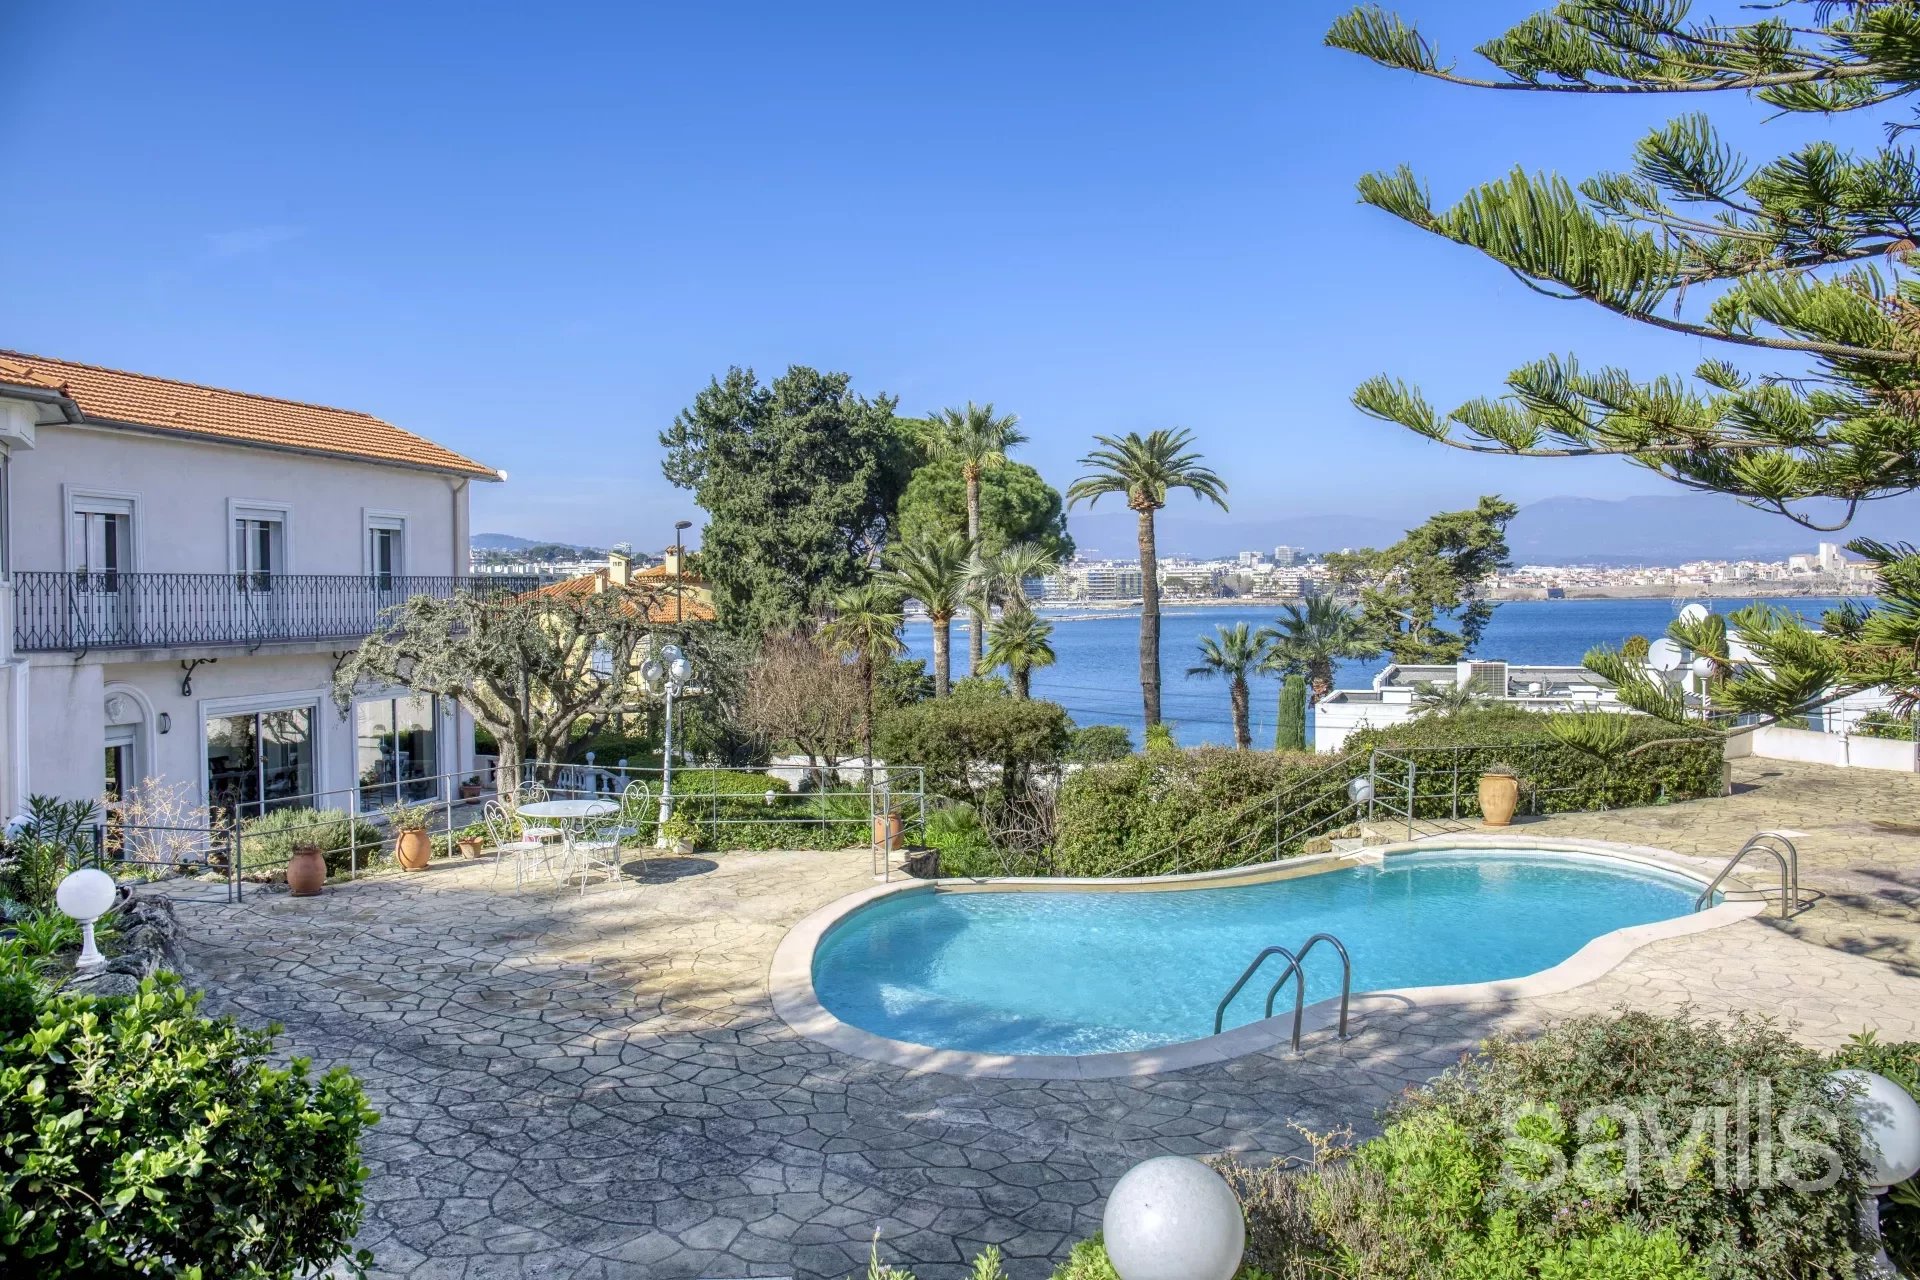 A superb villa, facing the sea